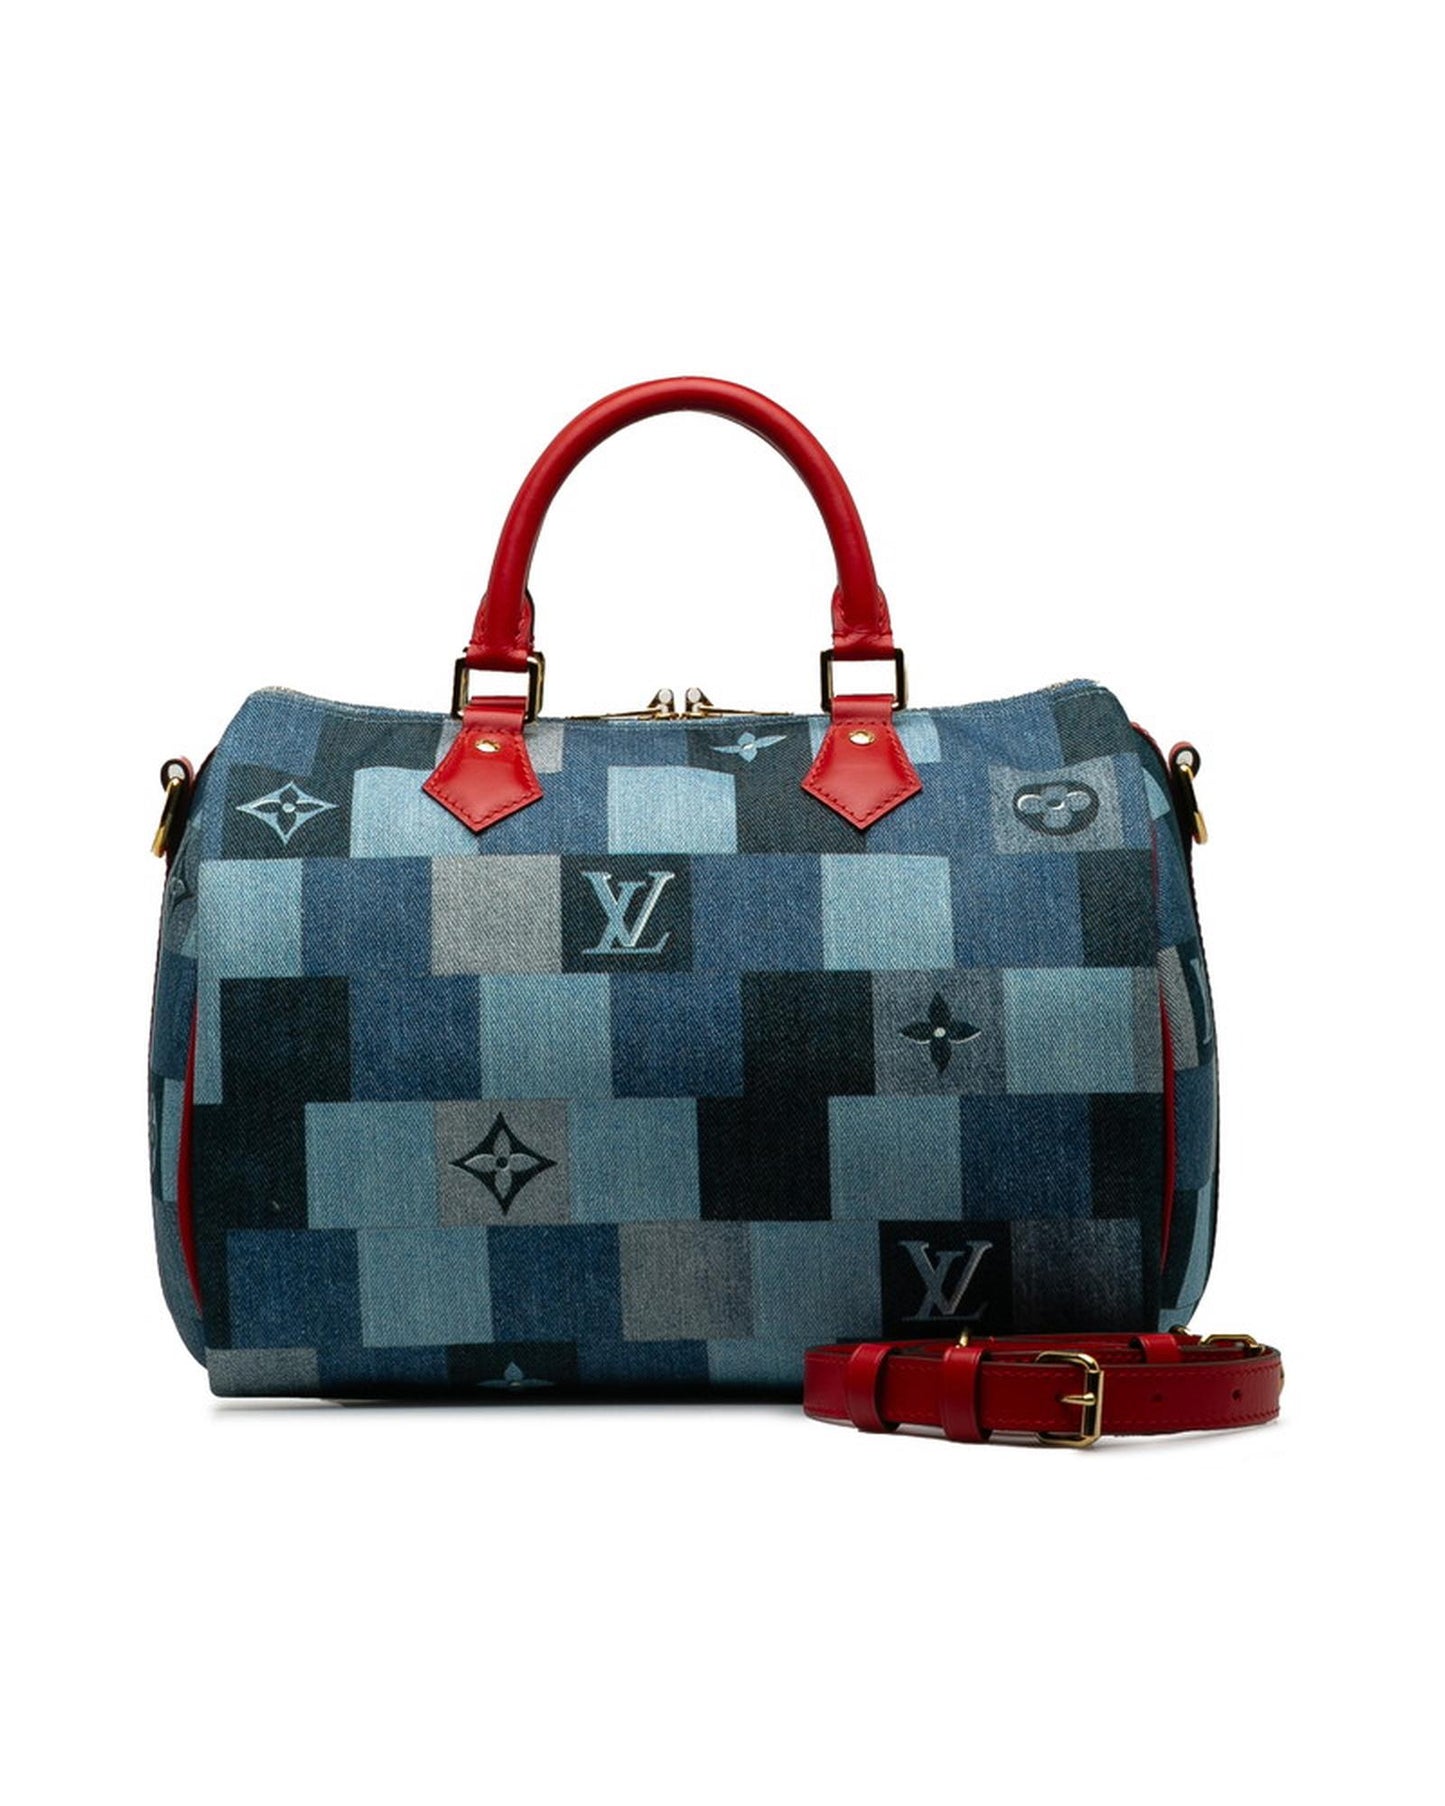 Louis Vuitton Women's Monogram Denim Speedy Bandouliere 30 Bag in A Condition in Blue